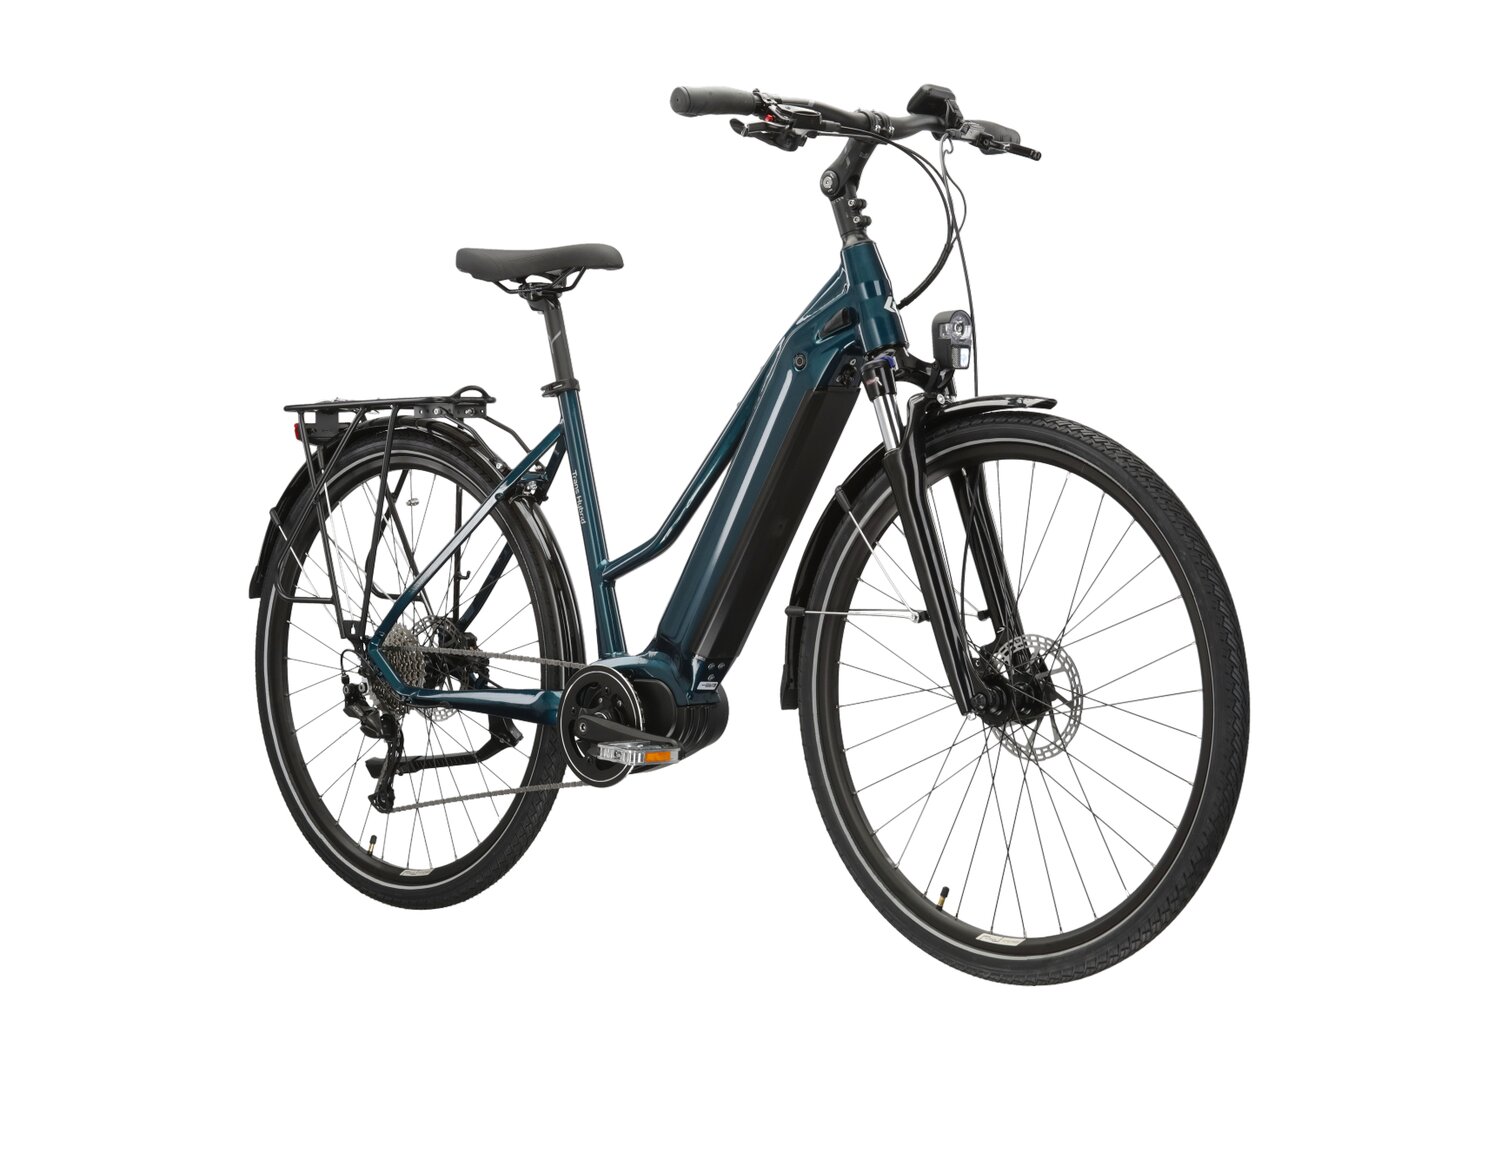  Elektryczny rower trekkingowy KROSS Trans Hybrid 2.0 730 Wh UNI na aluminiowej ramie w kolorze turkusowym wyposażony w osprzęt Shimano i napęd elektryczny Bafang